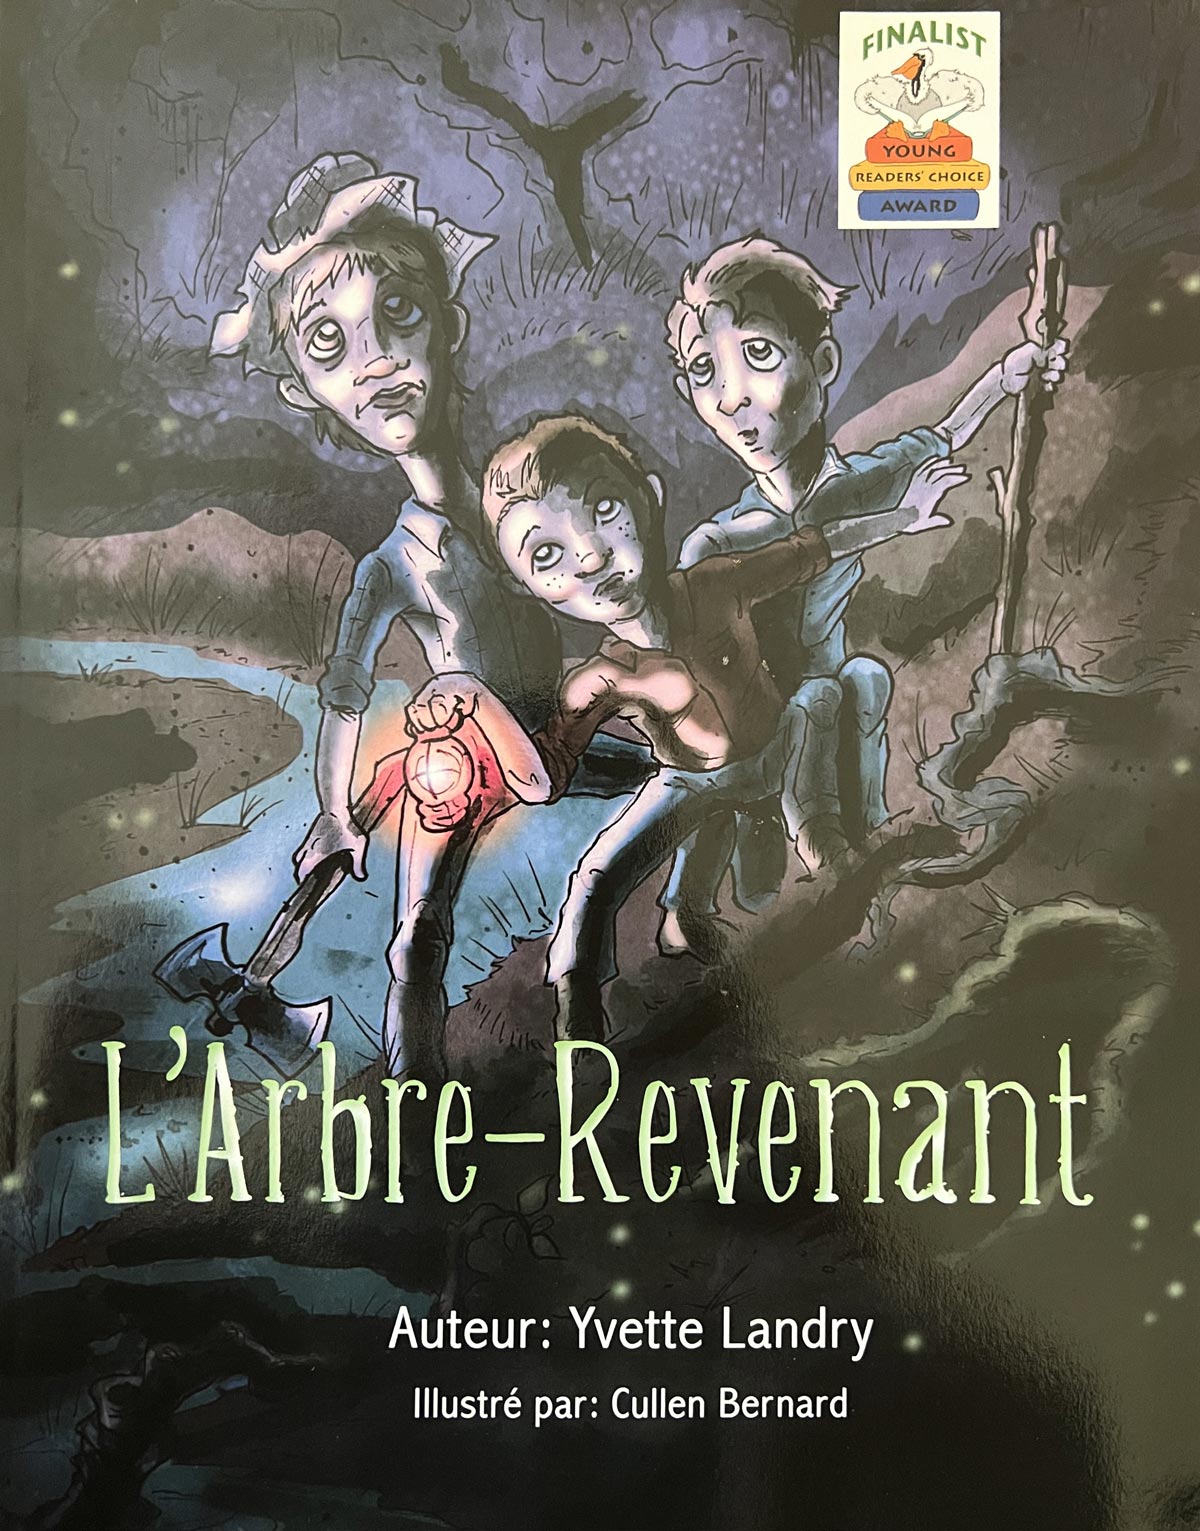 LArbre Revenant Yvette Landry book